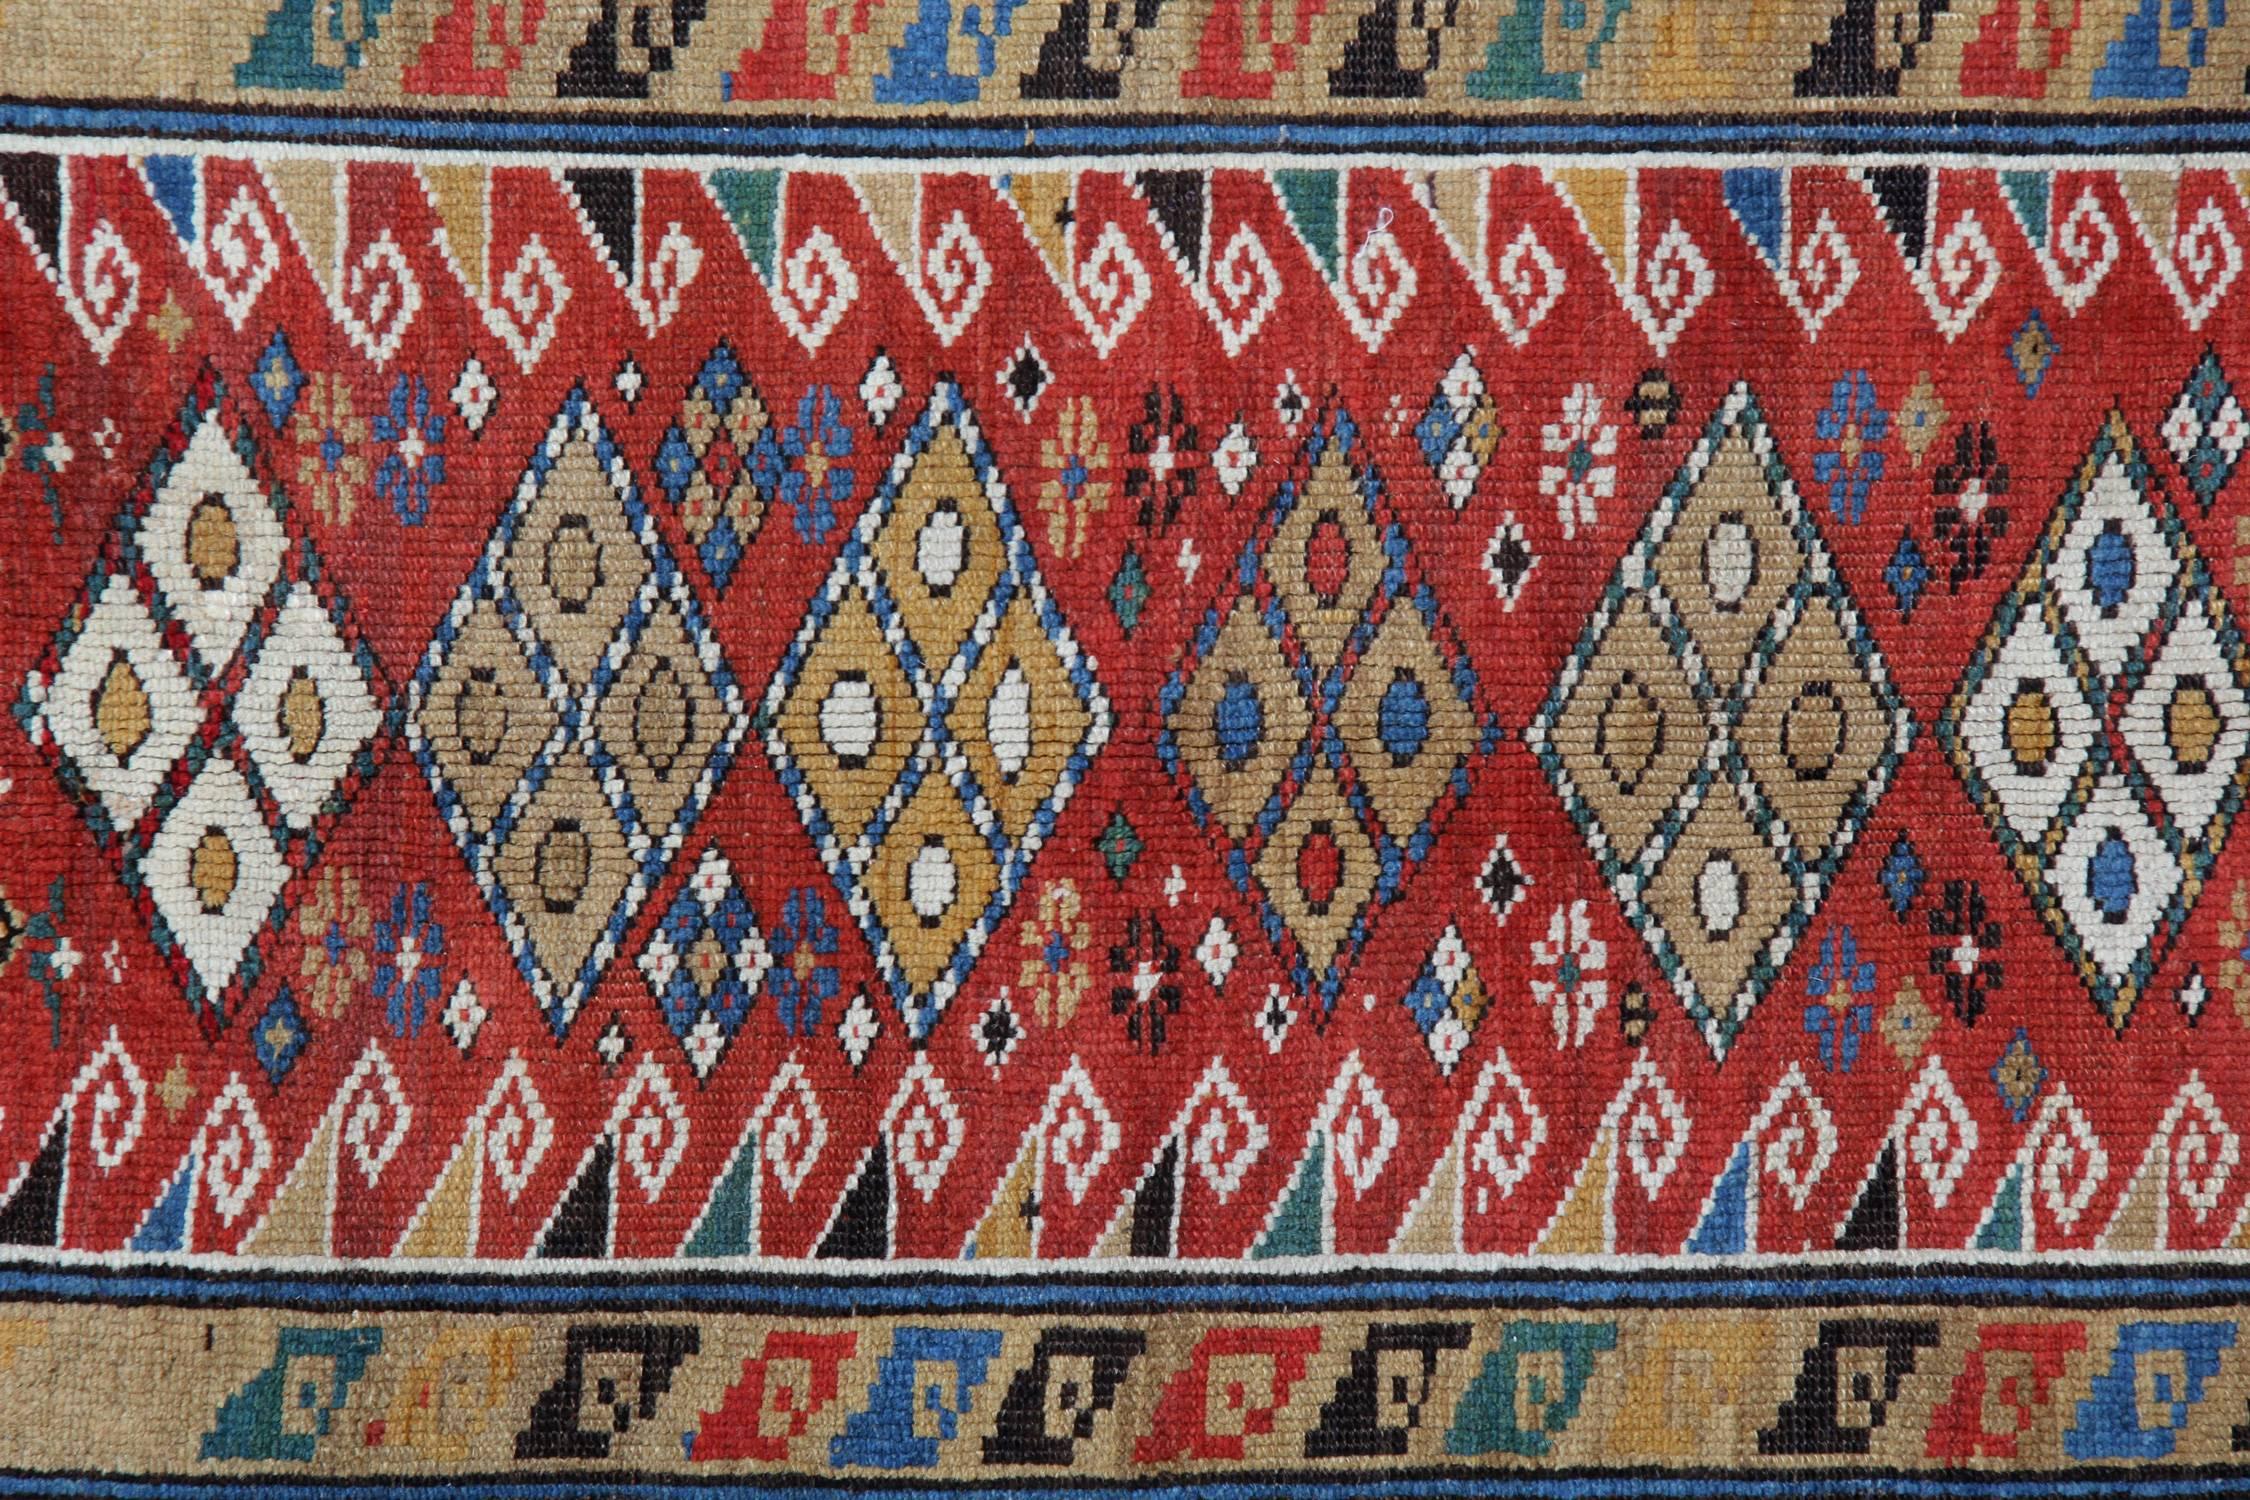 Kazak Handmade Antique Caucasian Shirvan Rug, Red Area Antique Rugs For Sale